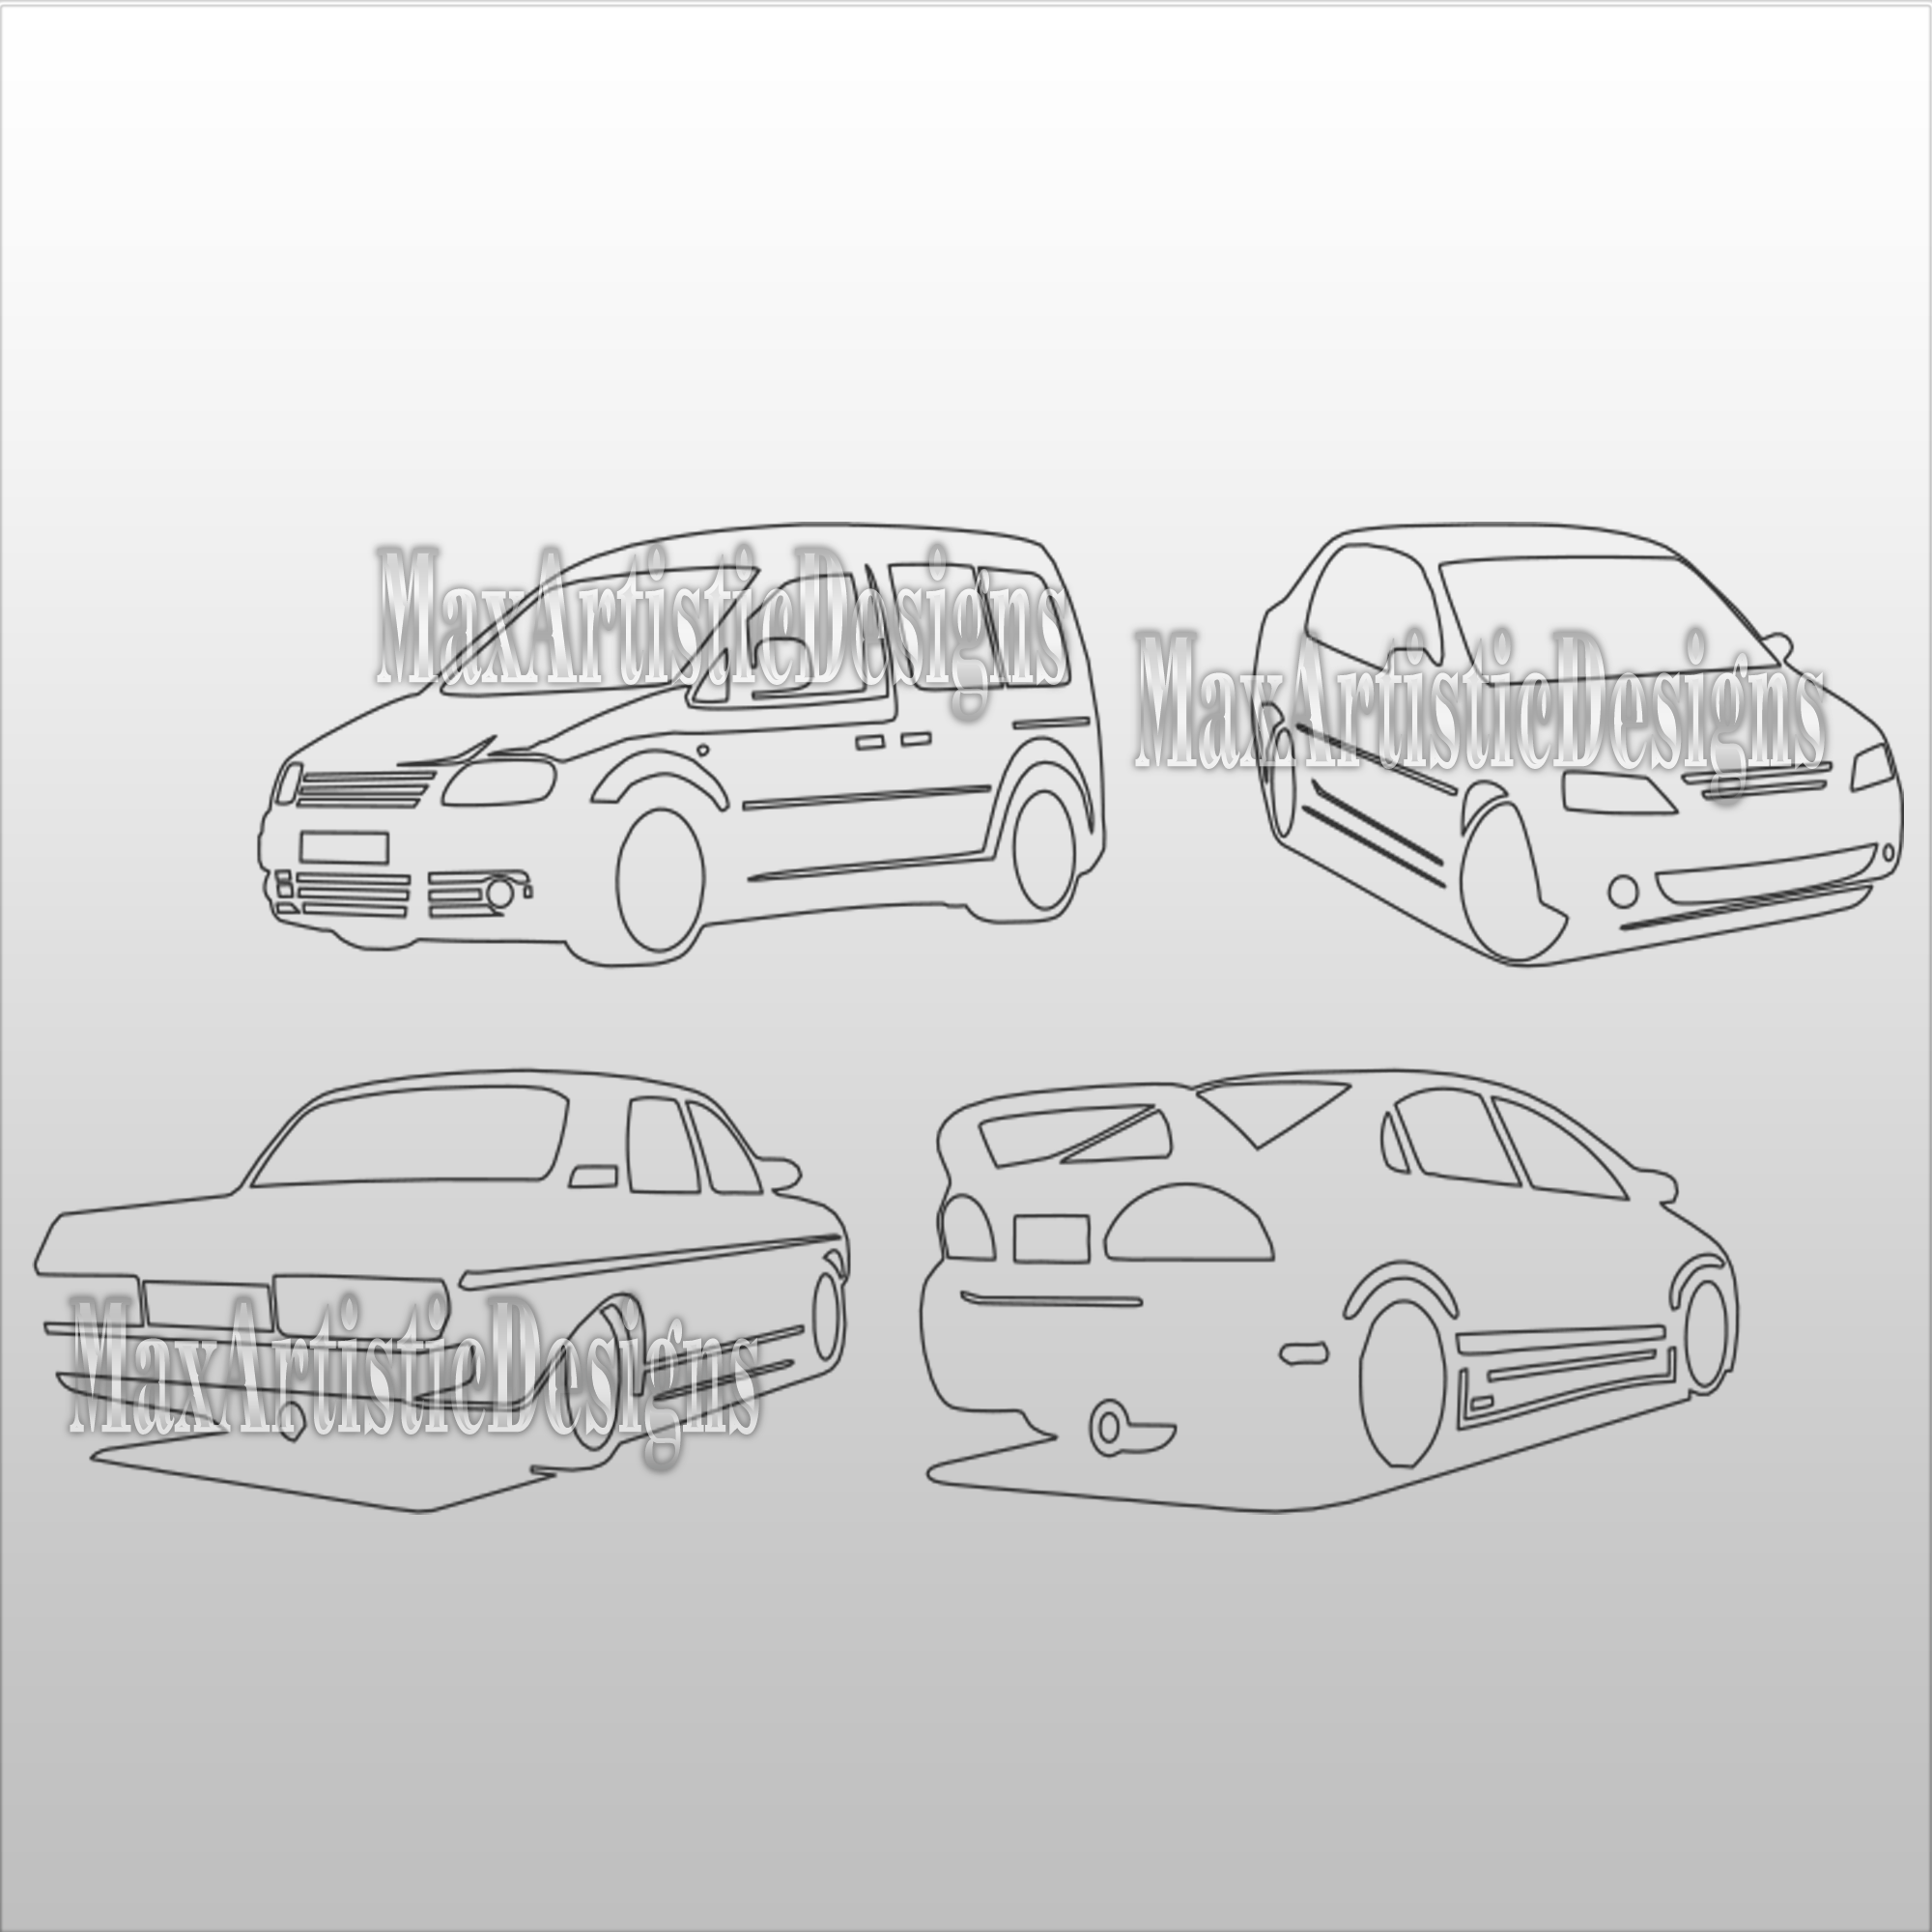 Oltre 35 modelli di automobili 2D in formato SVG DXF per taglio laser a getto d'acqua, router al plasma, download laser CNC